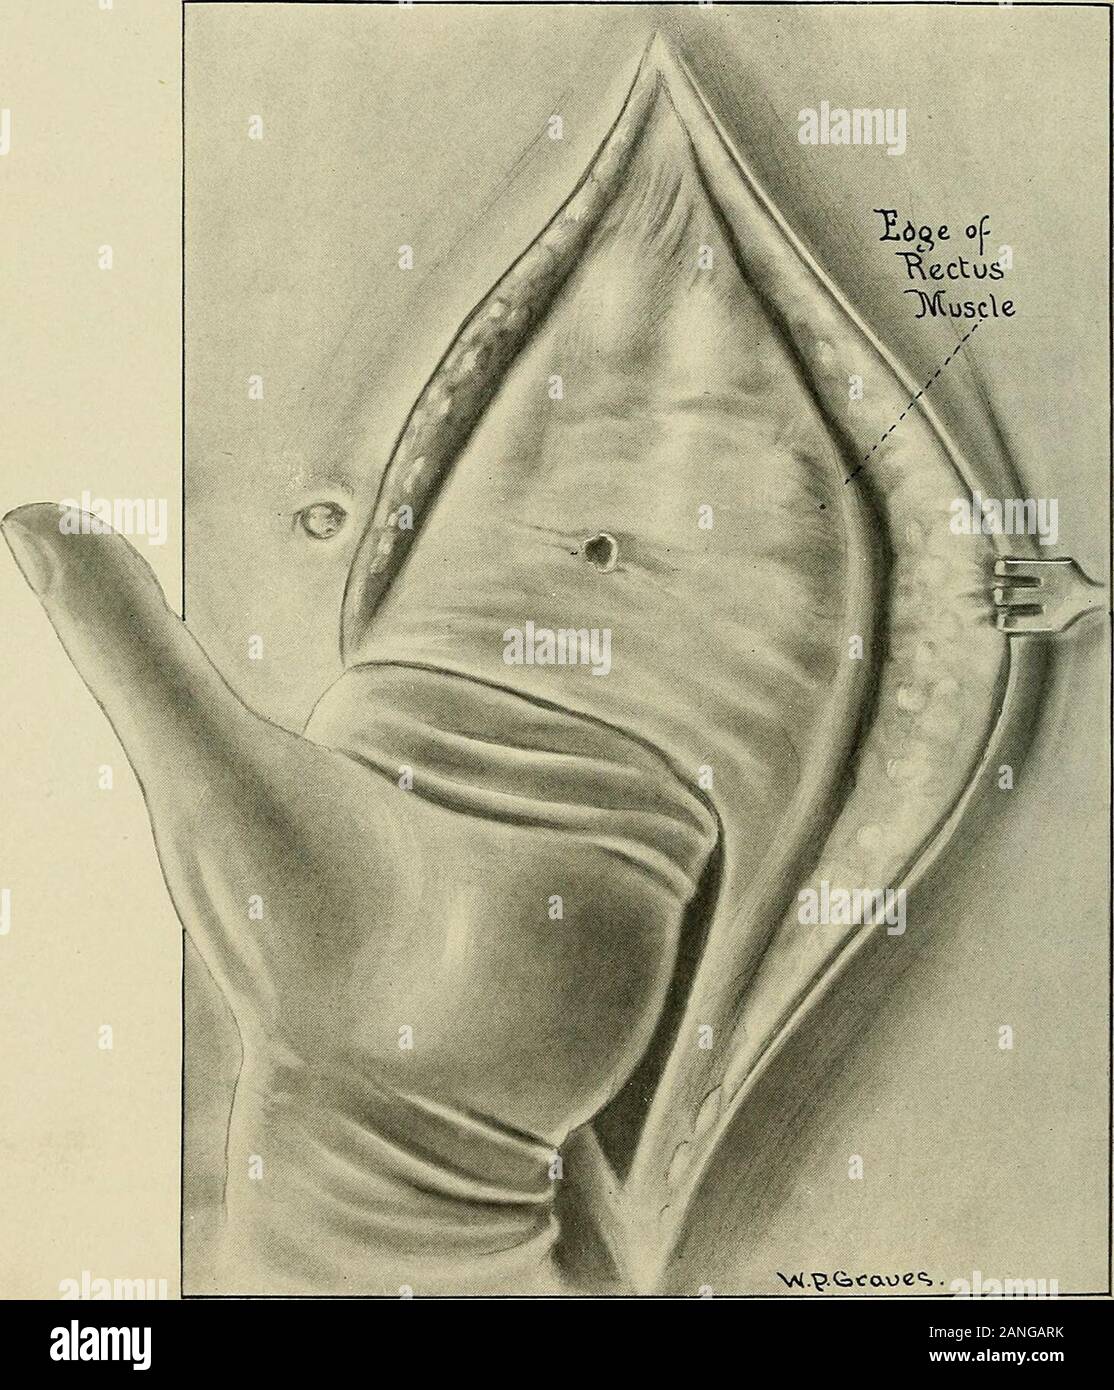 Gynécologie . al la relaxation de l'musclesextends séparation anormale au-dessus de l'ombilic. Lorsque l'opération pelvienne a été terminé theskin incision est élargie à environ 2 pouces au-dessus de l'ombilic. Le incisionis effectuée pas plus profond que la graisse. La peau et la couche de gras est alors dissectedwidely loin de l'aponévrose (la pièce jointe de l'ombilic beingsevered) jusqu'à ce que les bords du rectus muscles sont atteints. Il est important que l'aponévrose doit être bien nettoyé de la graisse. Lorsque tous les navires ont été liés, sont placés de manière à infold la paroi abdominale et mettre t Banque D'Images